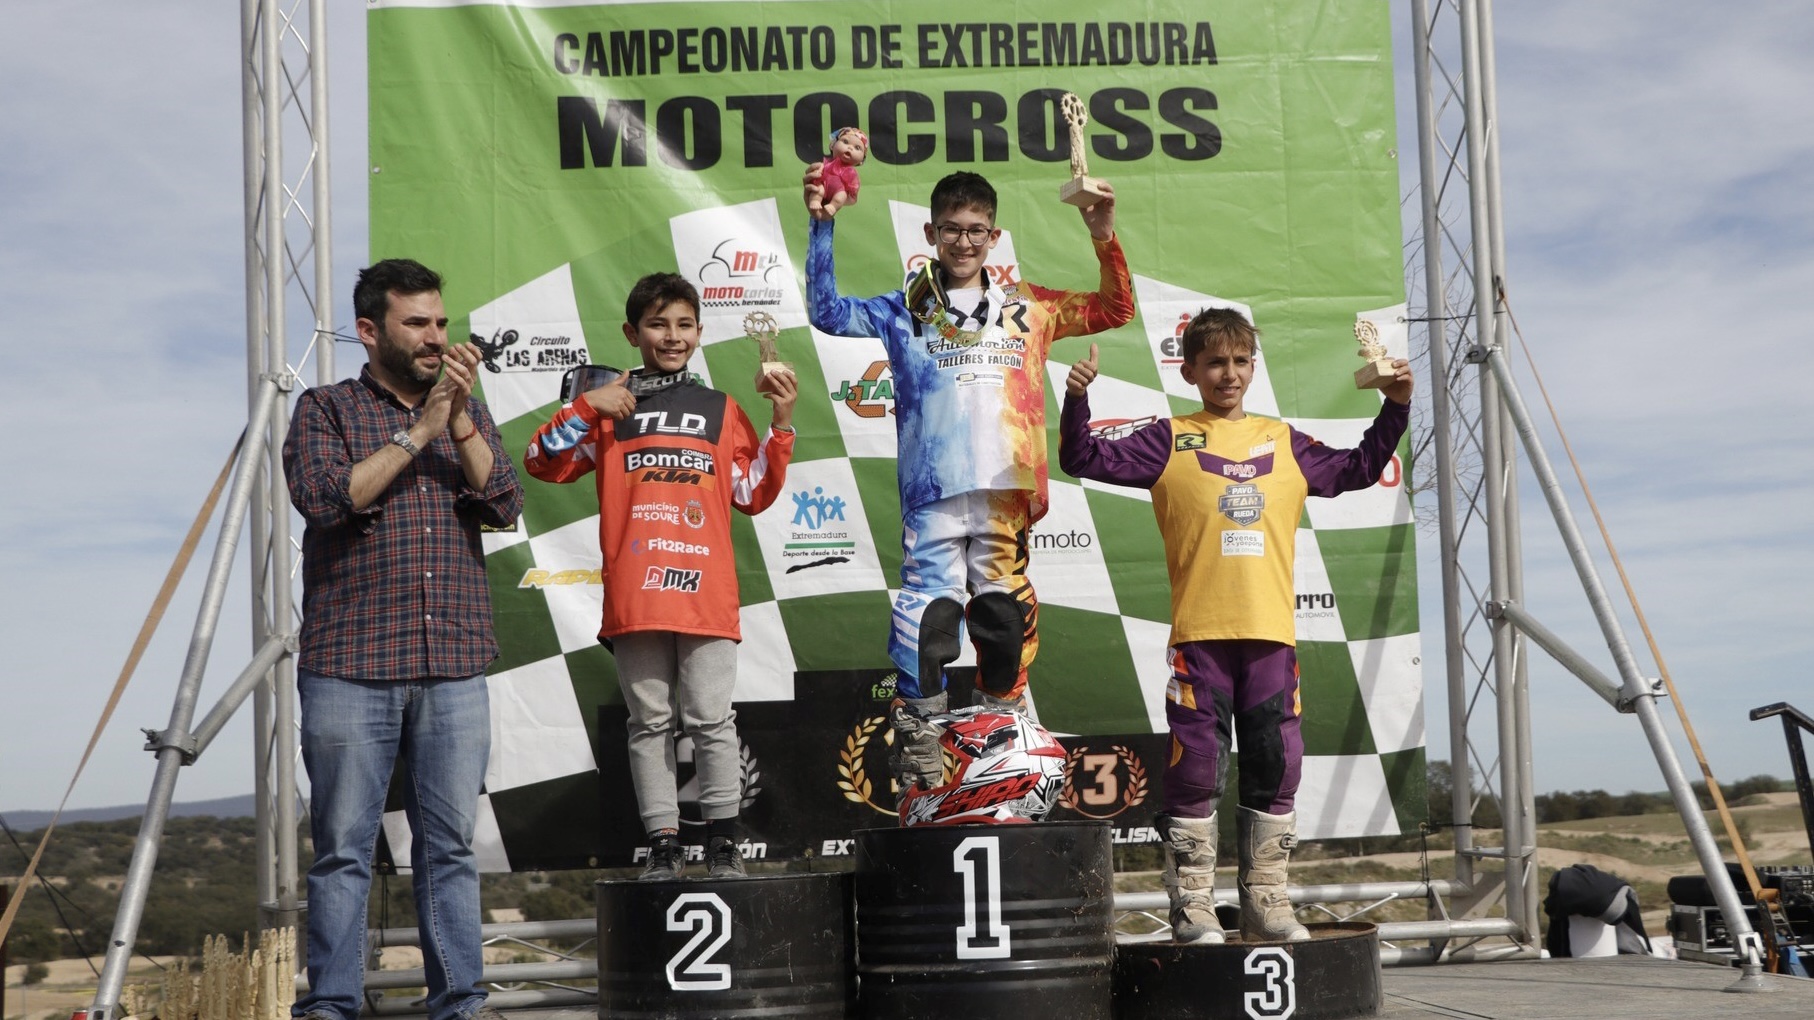 Motocross, Espanha: Gui Gomes perto da vitória no campeonato da Extremadura thumbnail